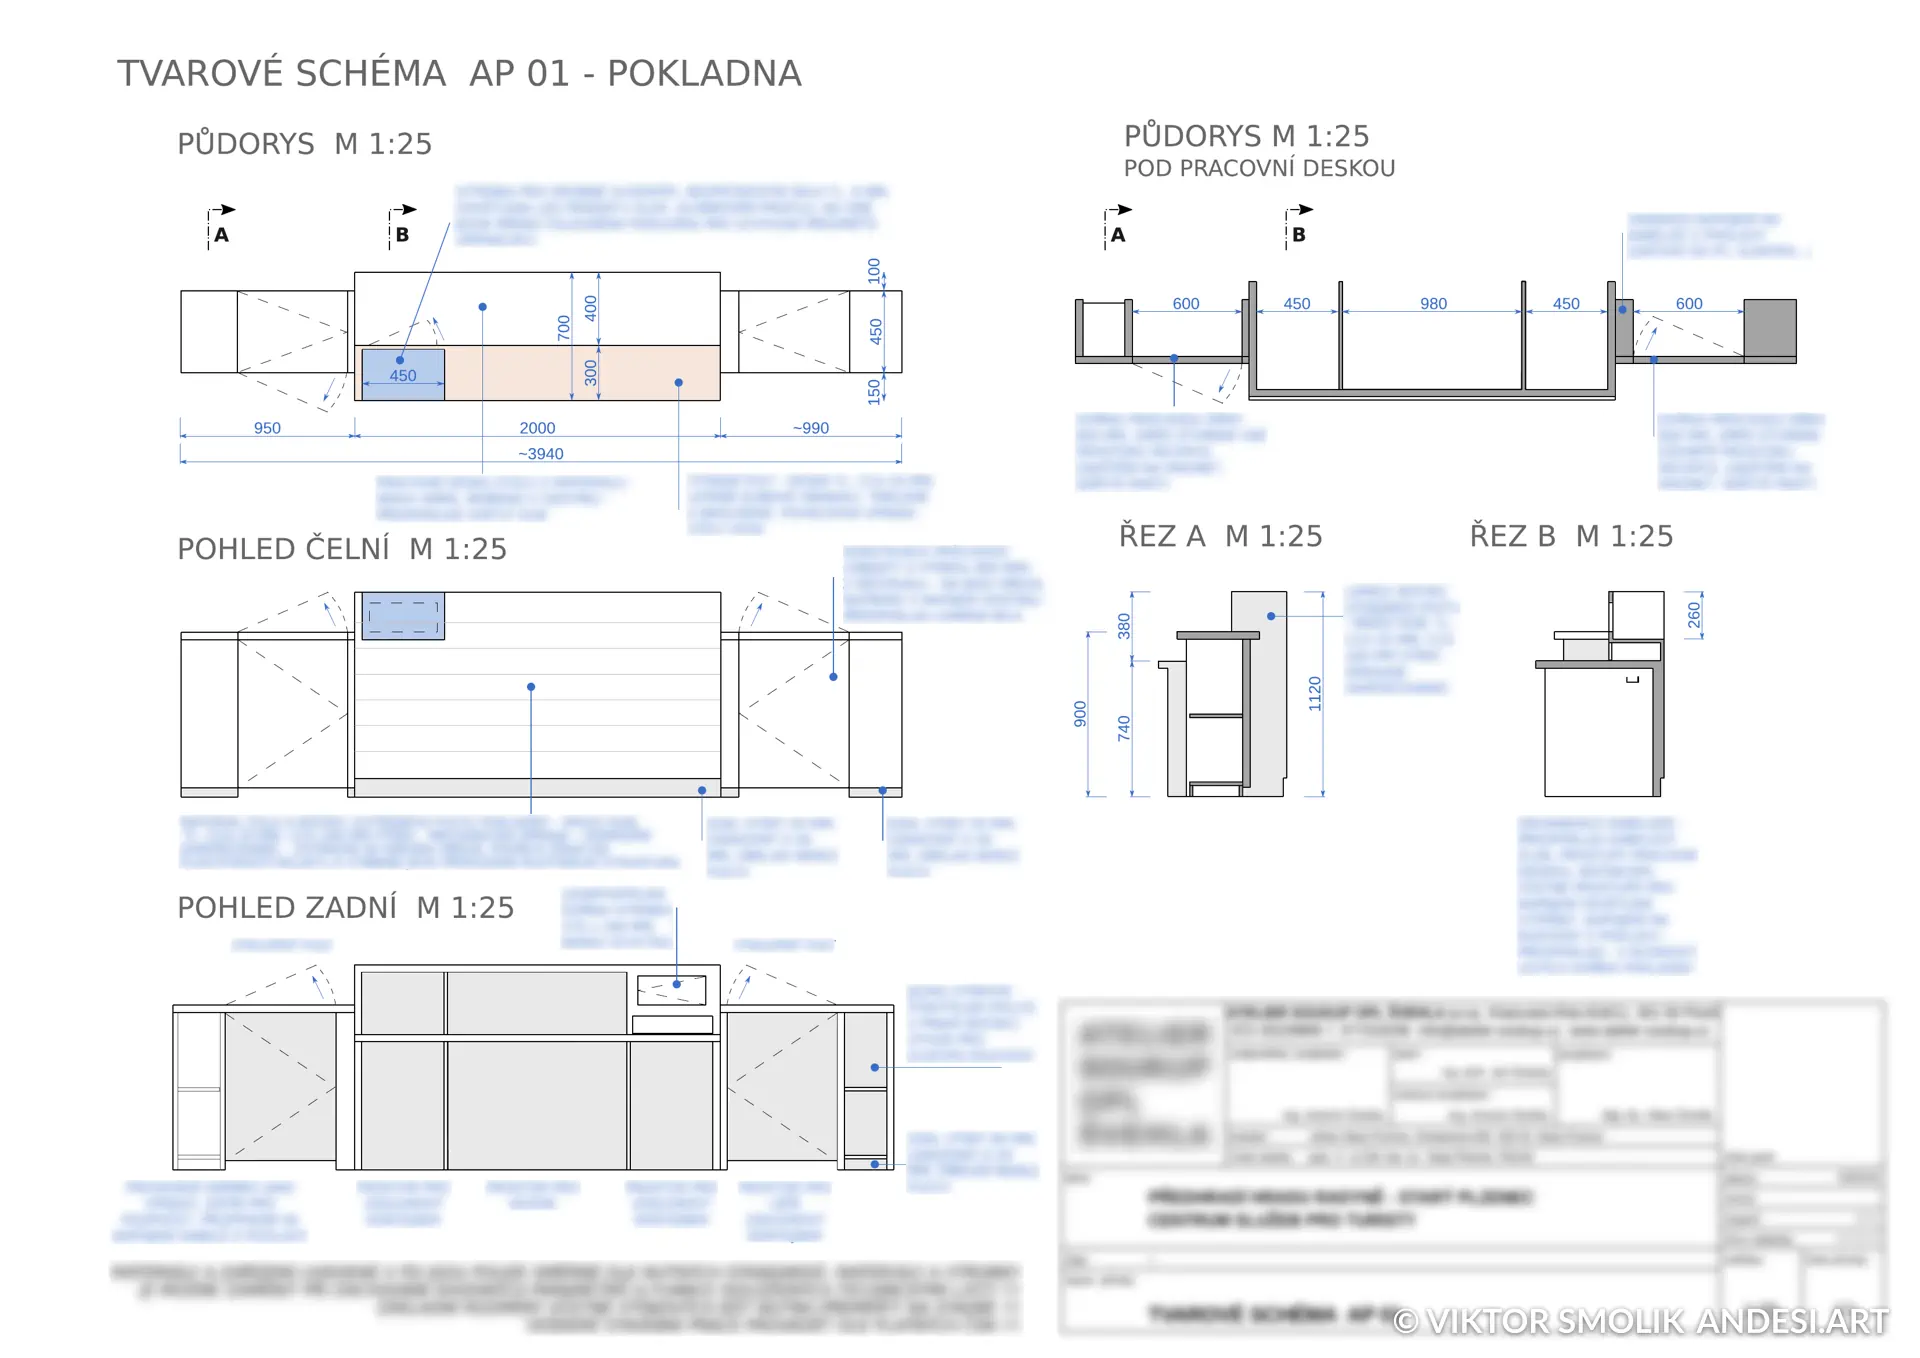 Reception Desk Blueprints